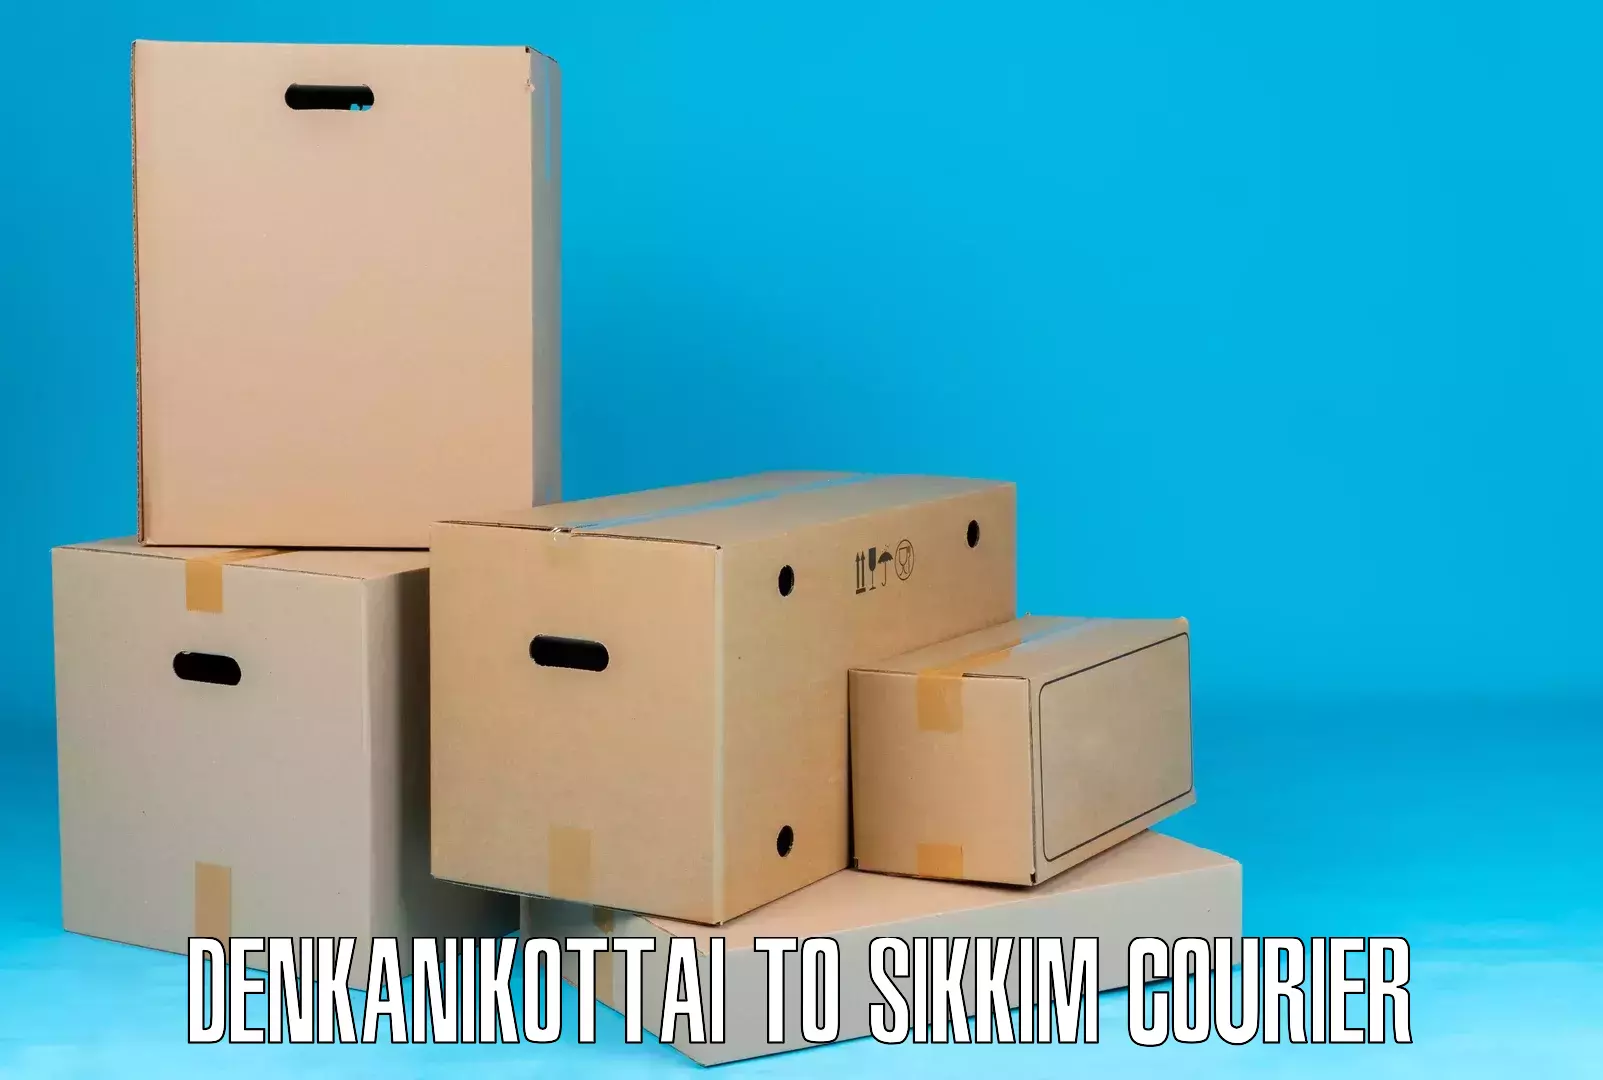 Door-to-door shipment Denkanikottai to South Sikkim